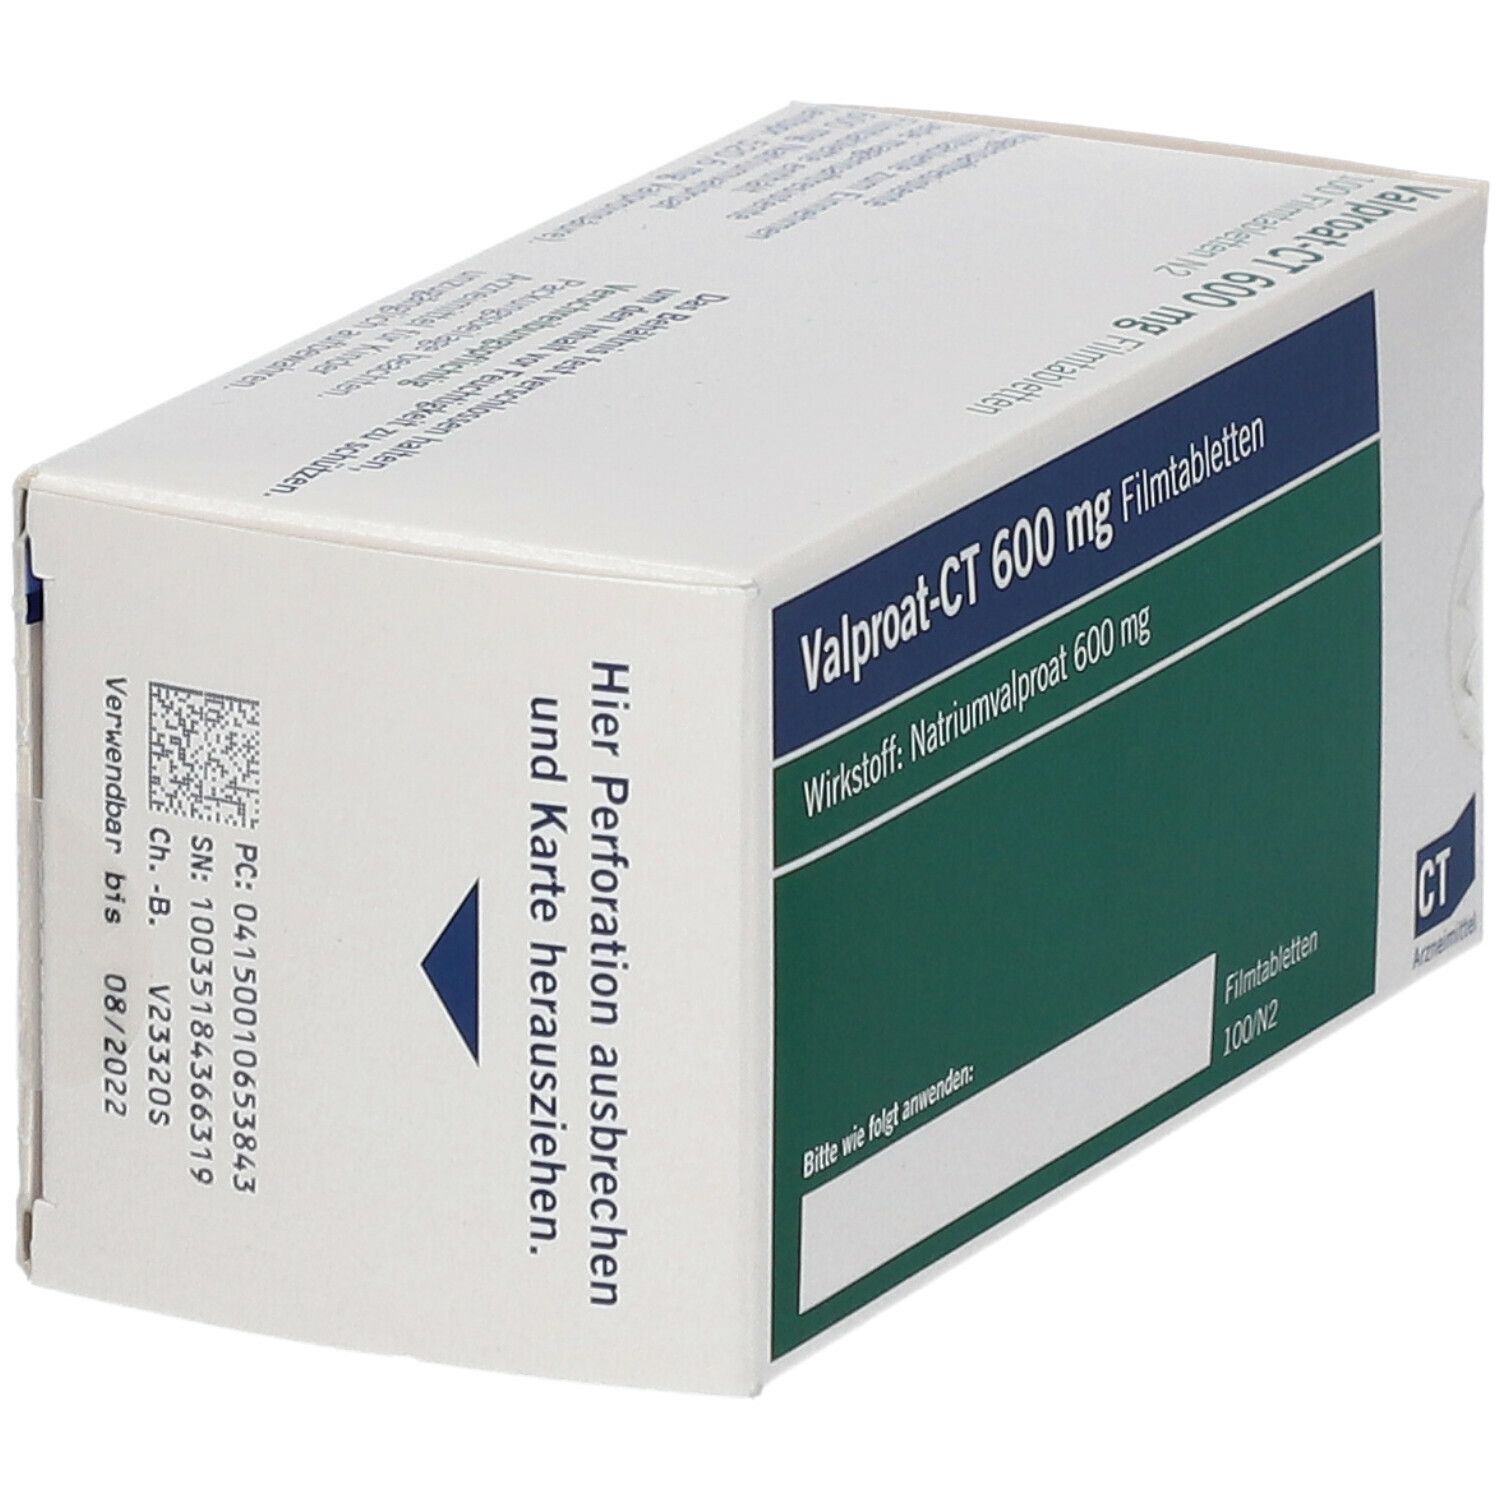 Valproat-CT 600 mg